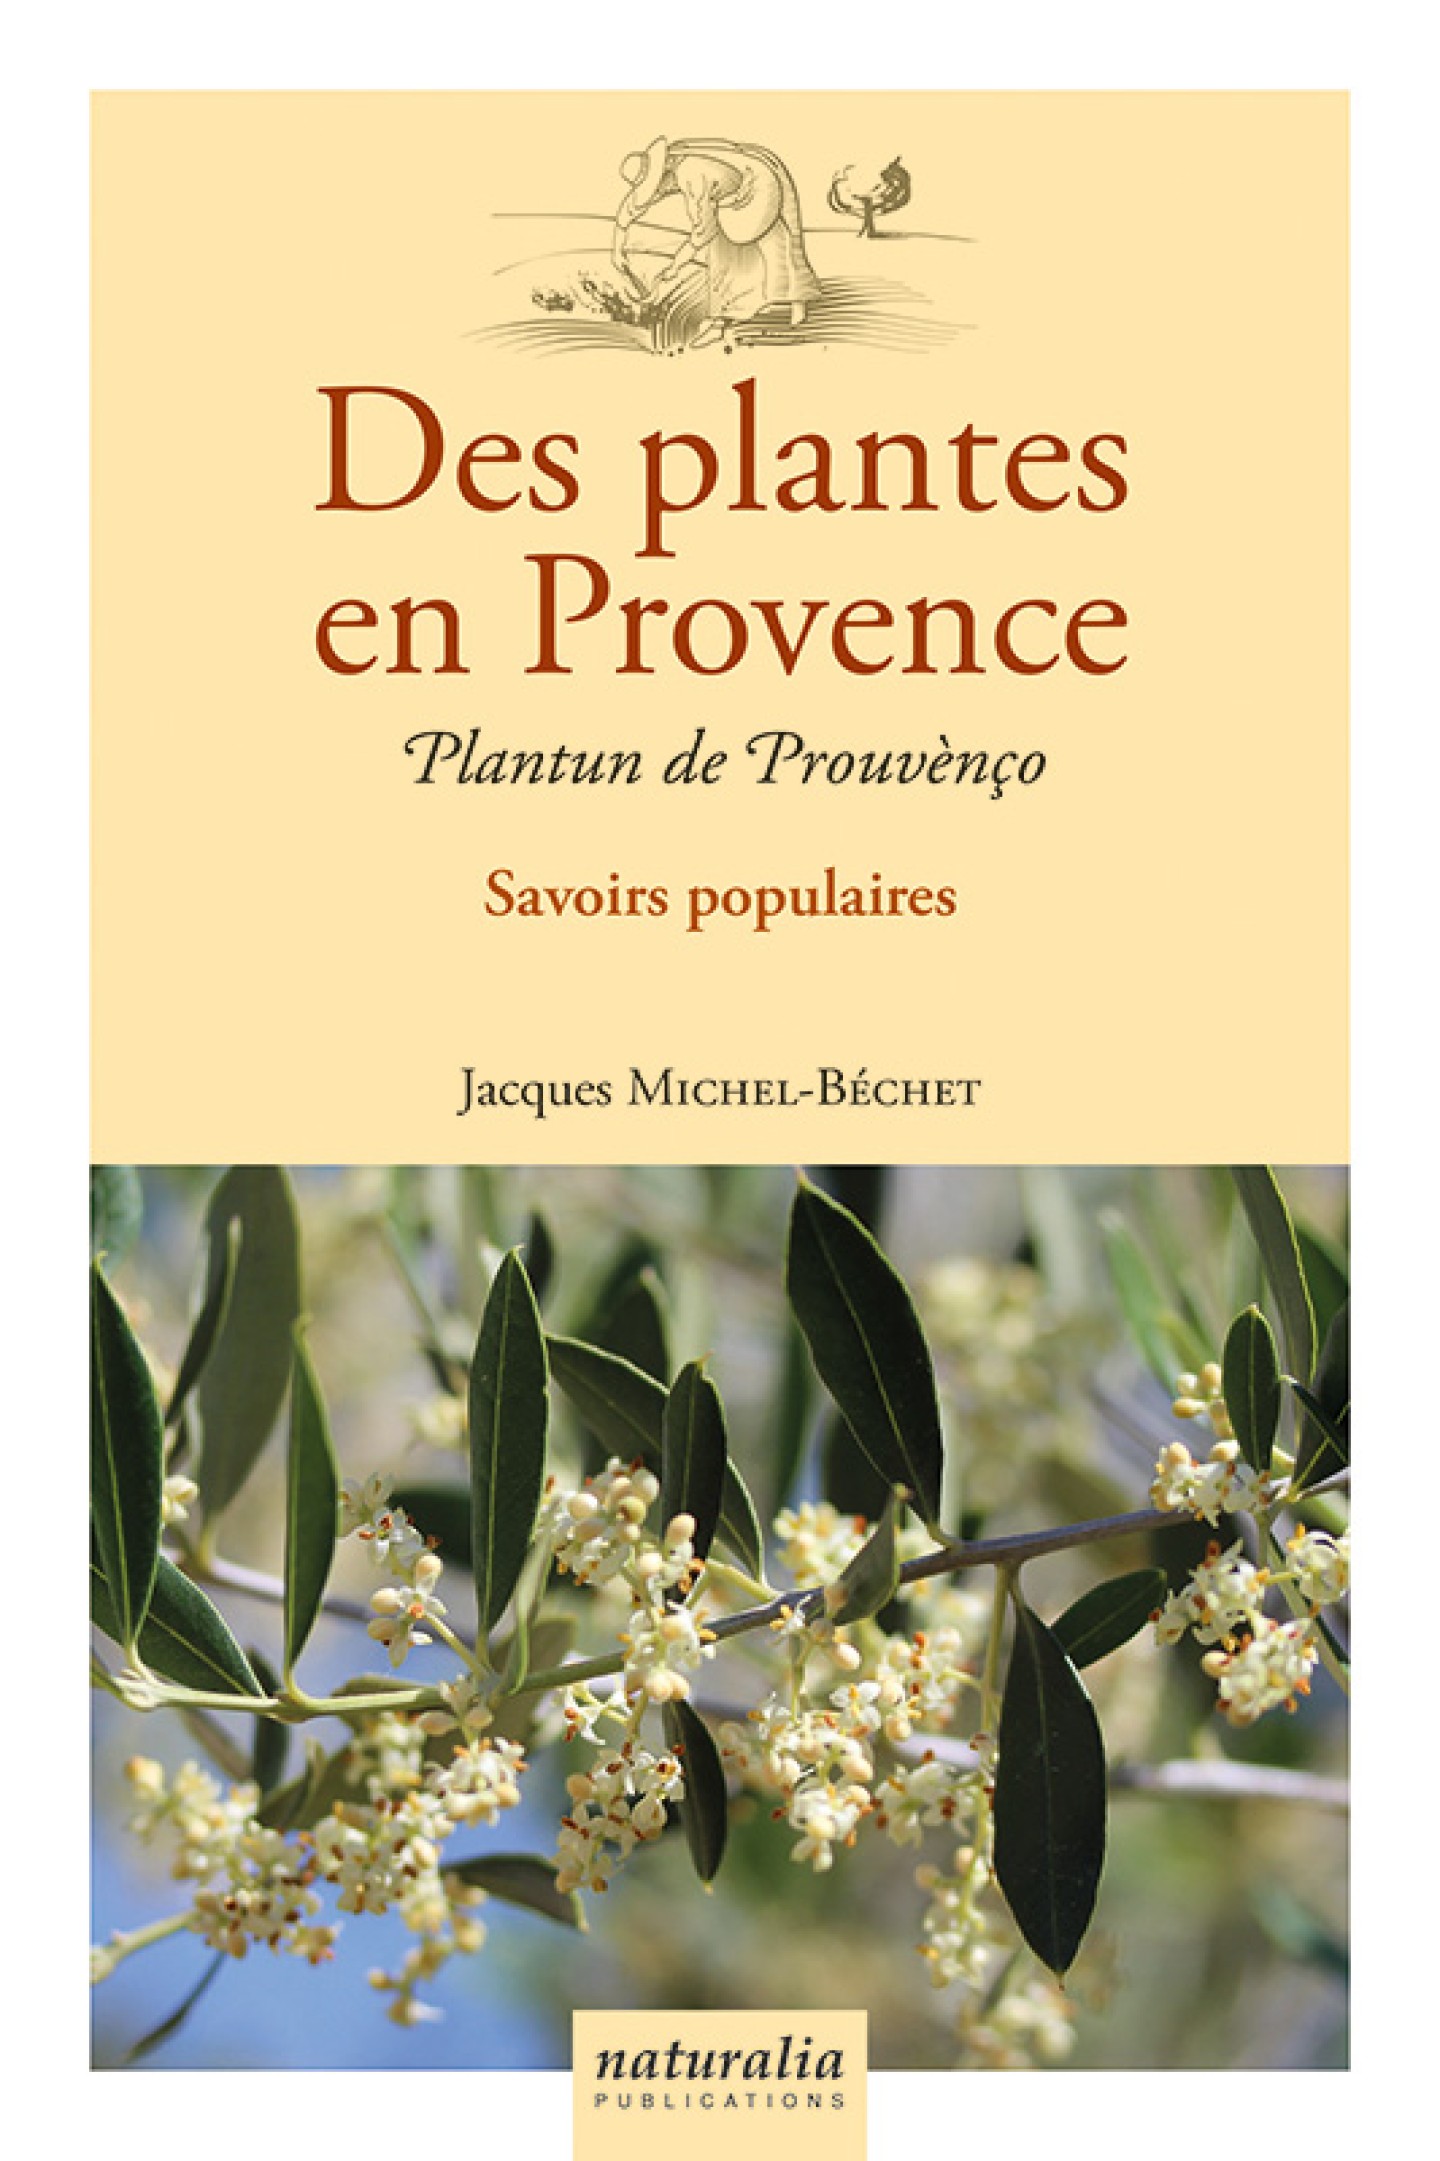 Des plantes en Provence est à la fois un guide botanique, de cueillette et médicinal, en Français et Provençal de Jacques Michel-Béchet